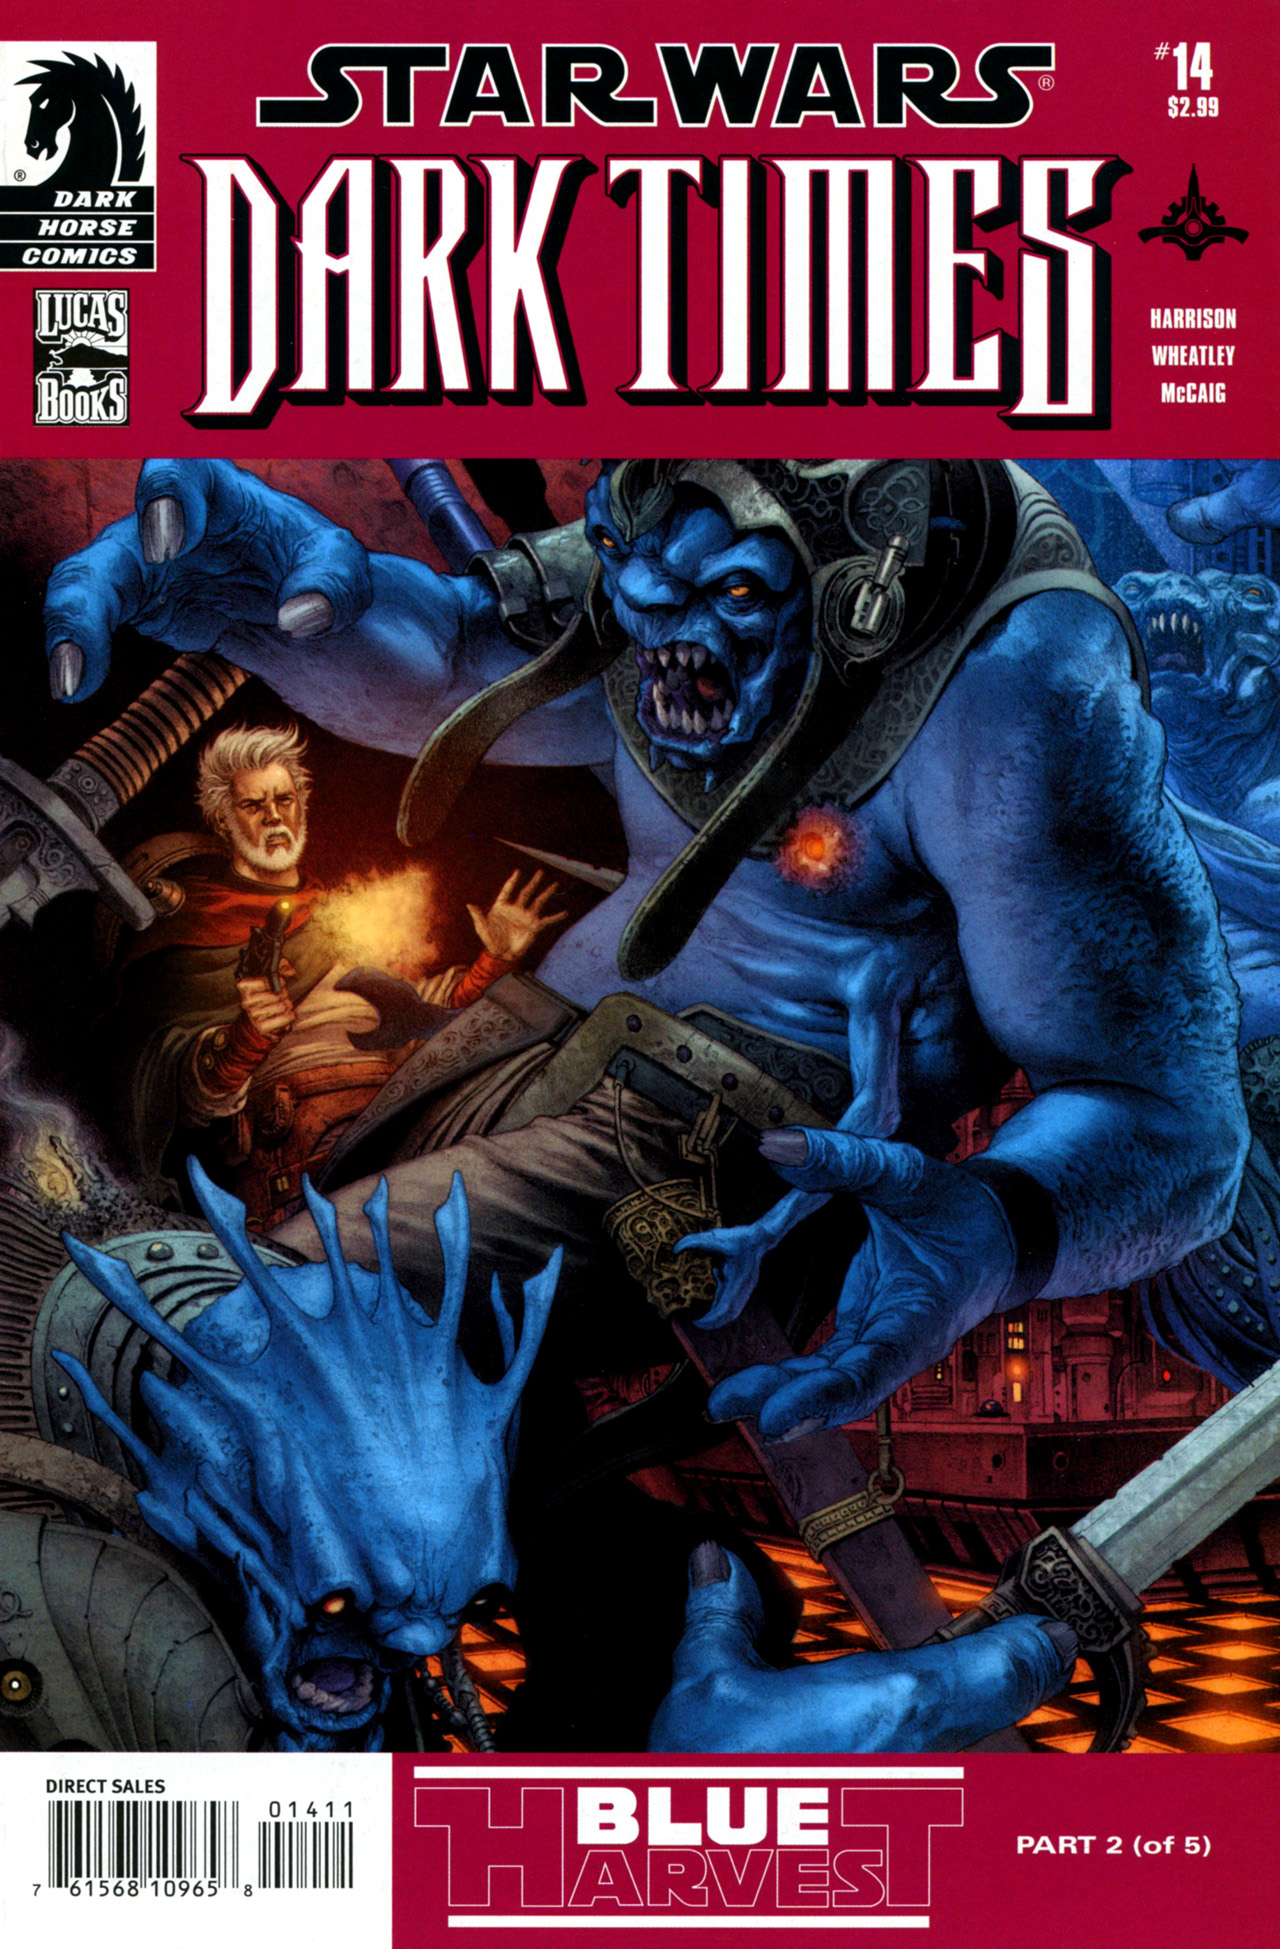 Read online Star Wars: Dark Times comic -  Issue #14 - Blue Harvest, Part 2 - 2